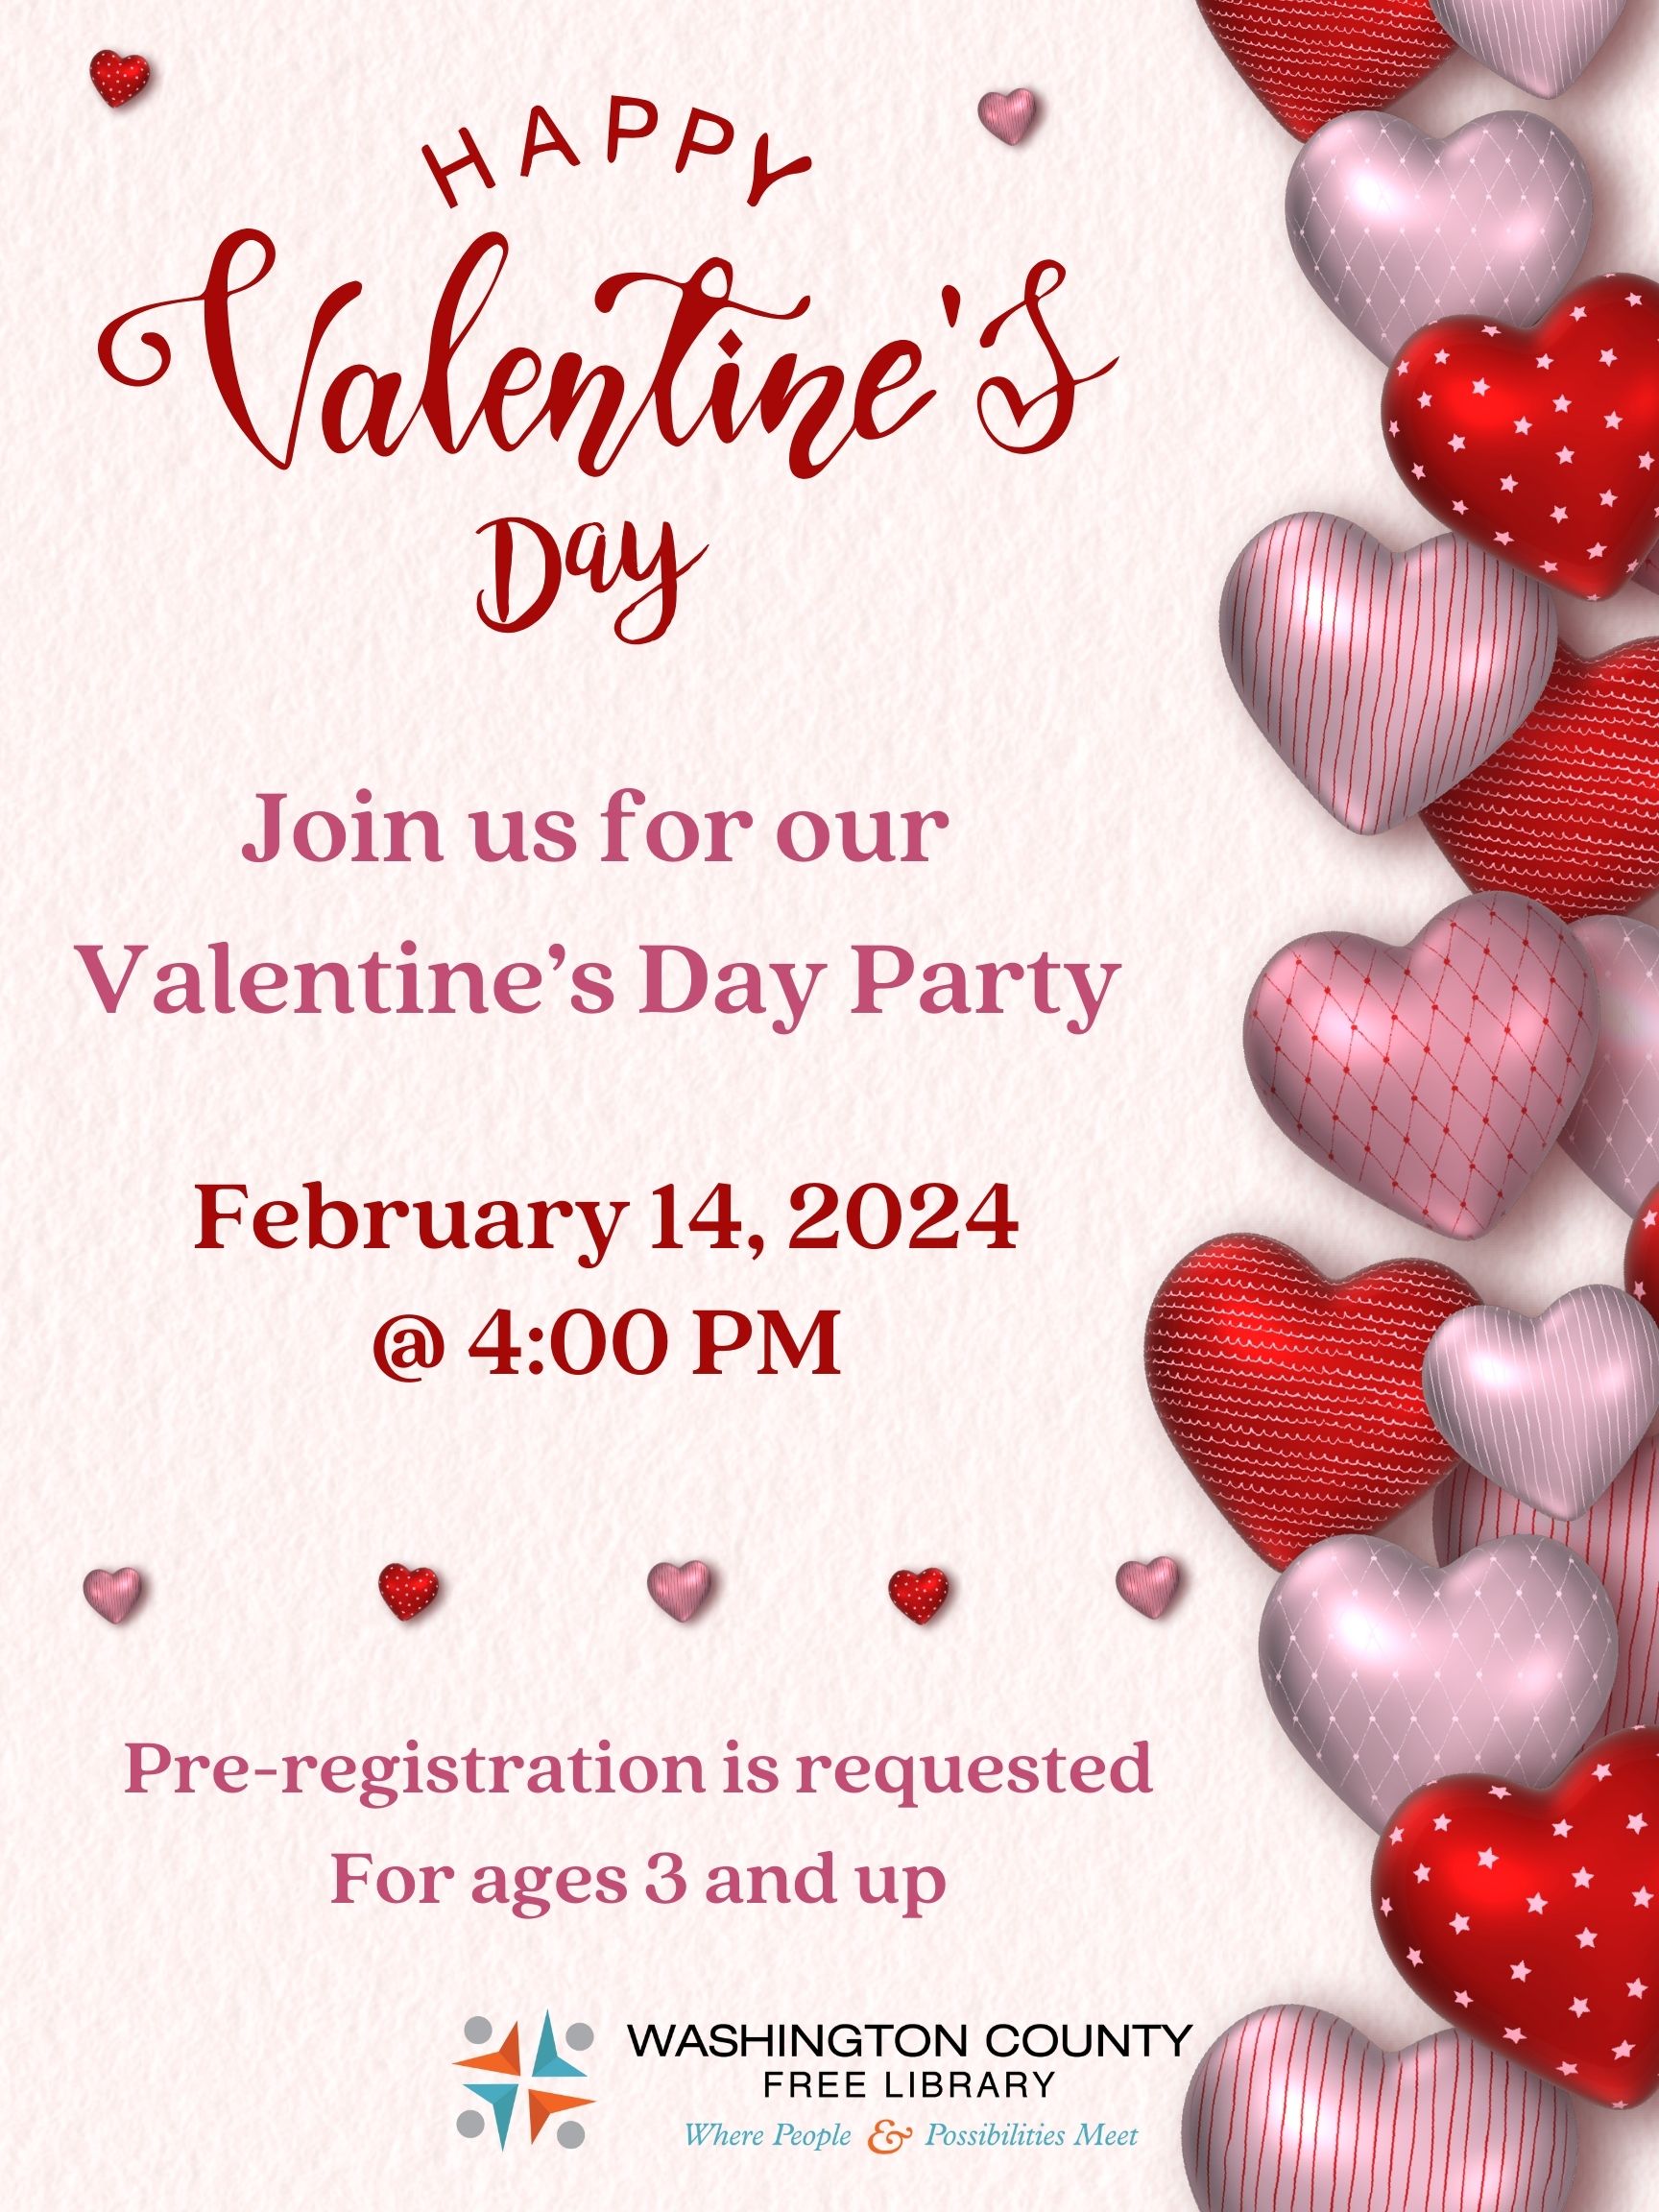 Valentine's Party Information